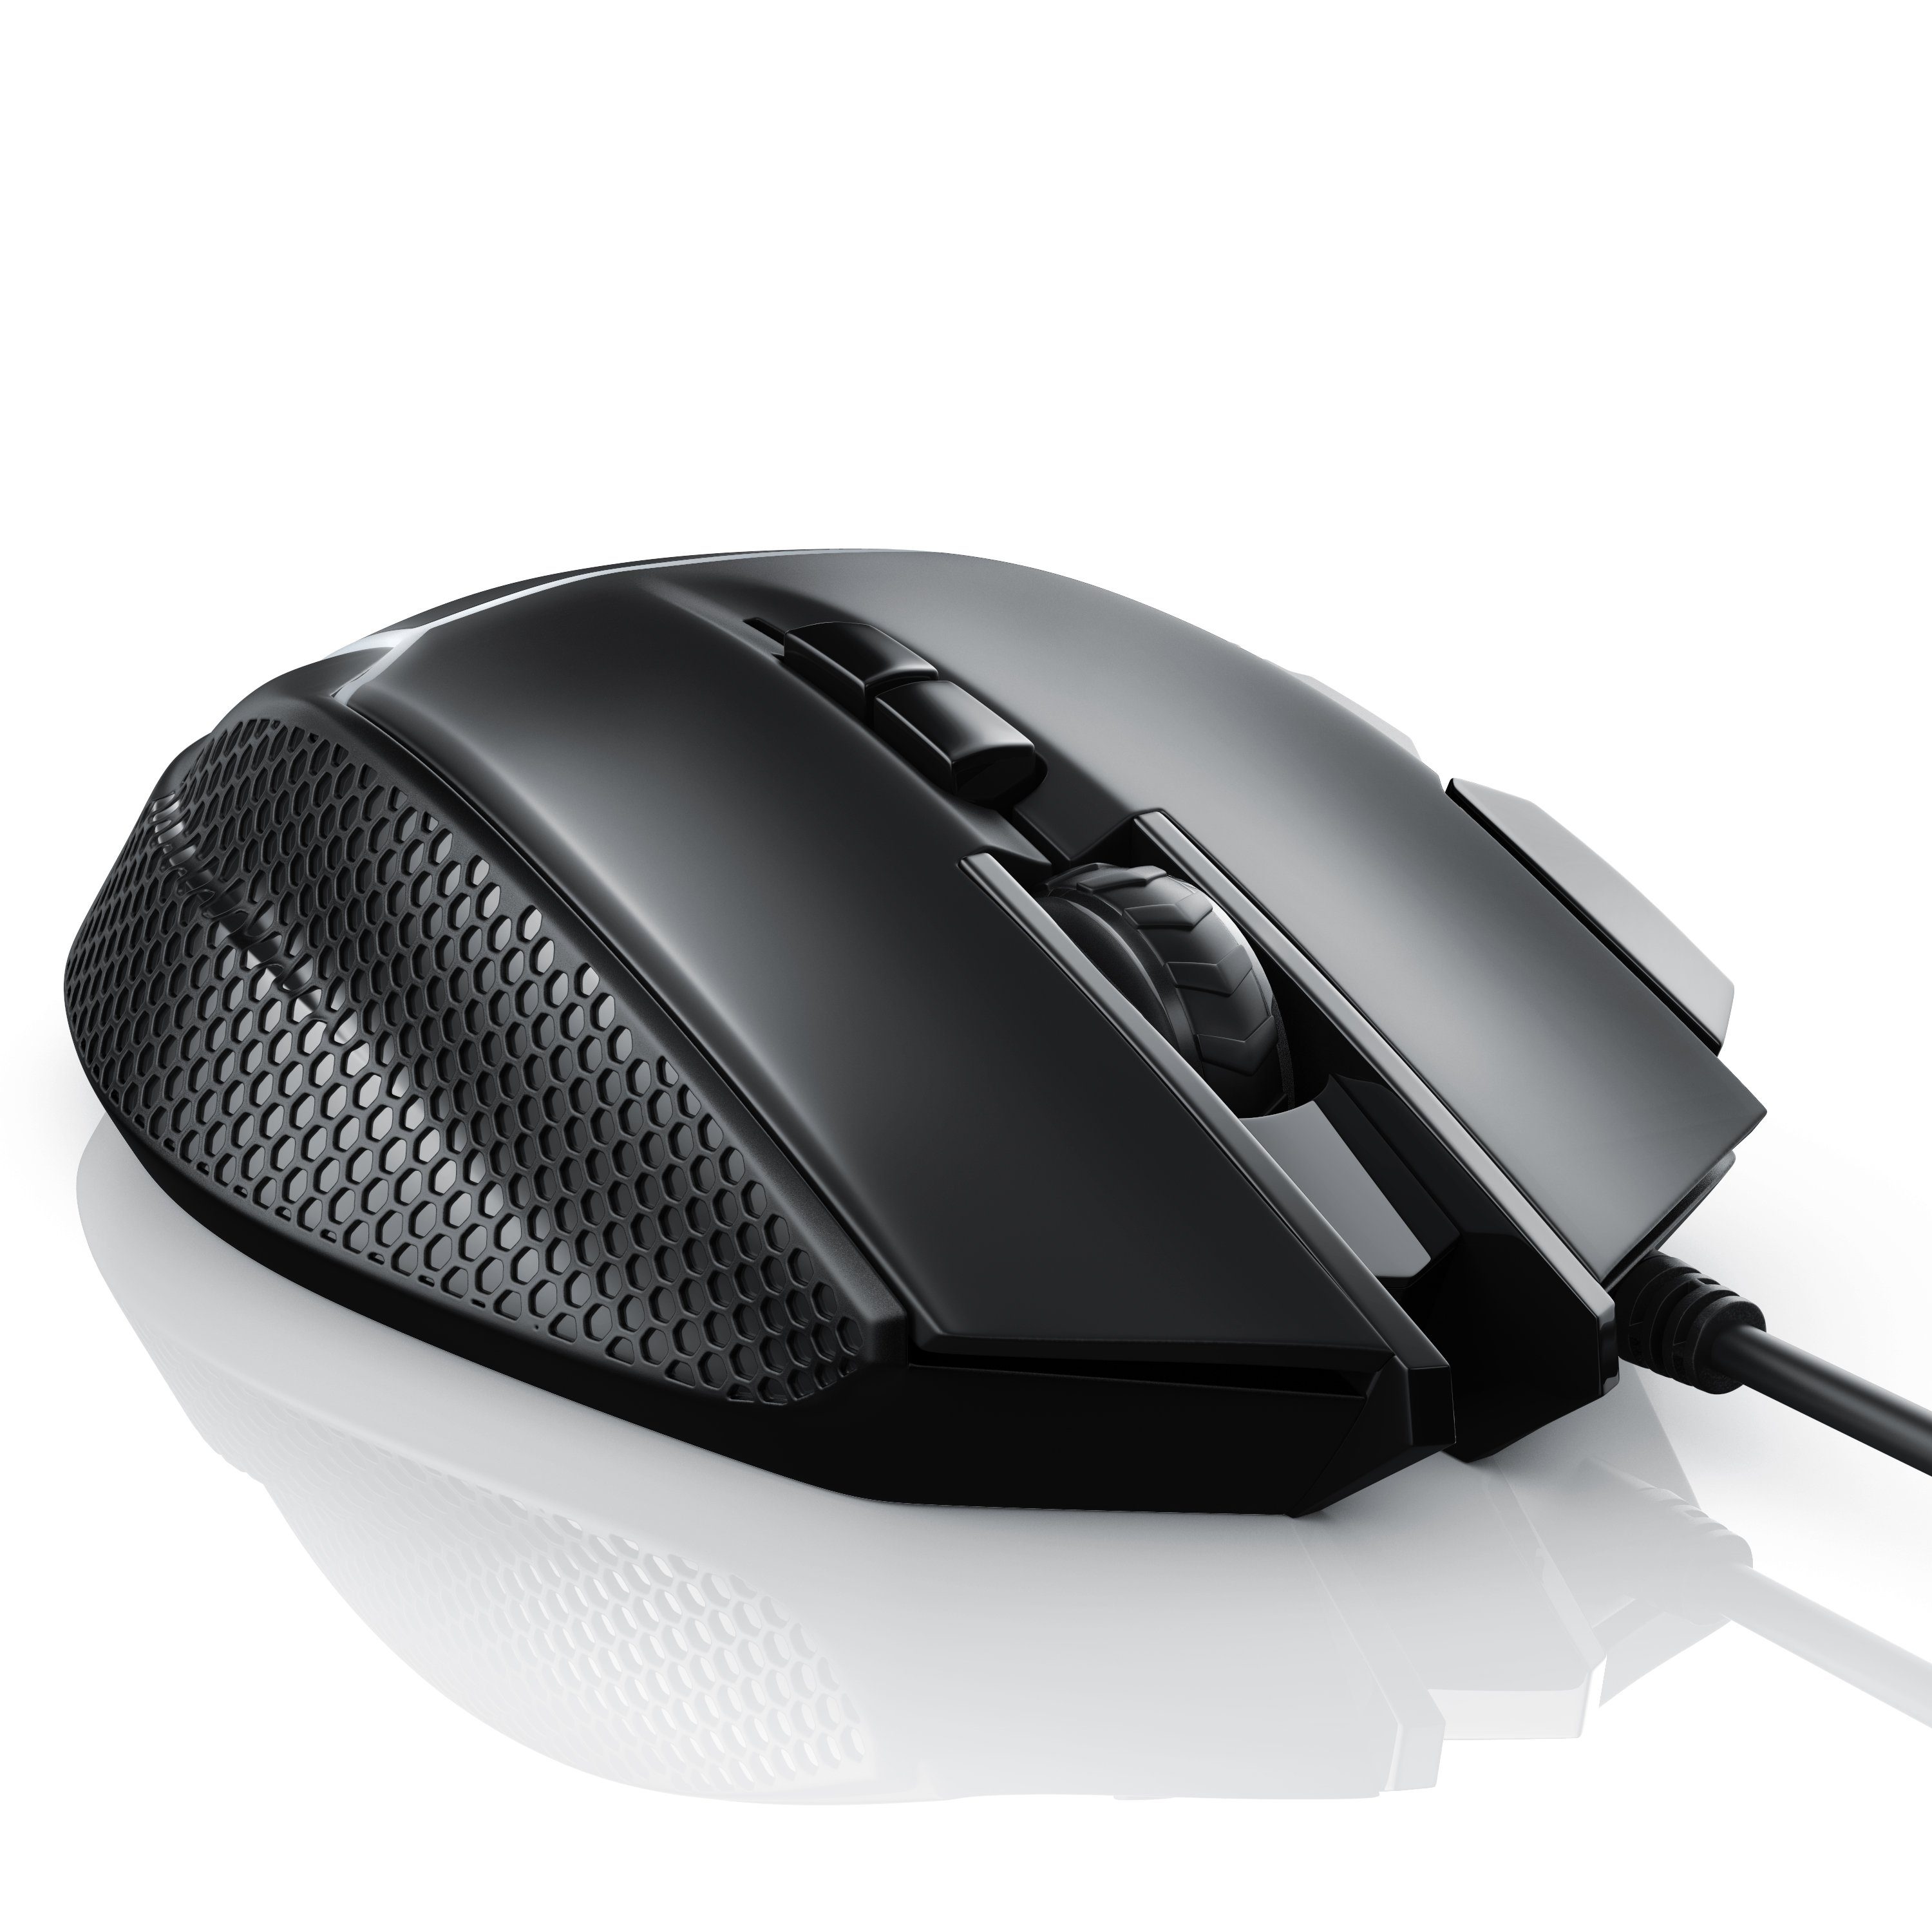 CSL Gaming-Maus 500 dpi, Gewichten) (kabelgebunden, ergonomisch, Abtastrate wählbar, Mouse inkl. 3200 dpi